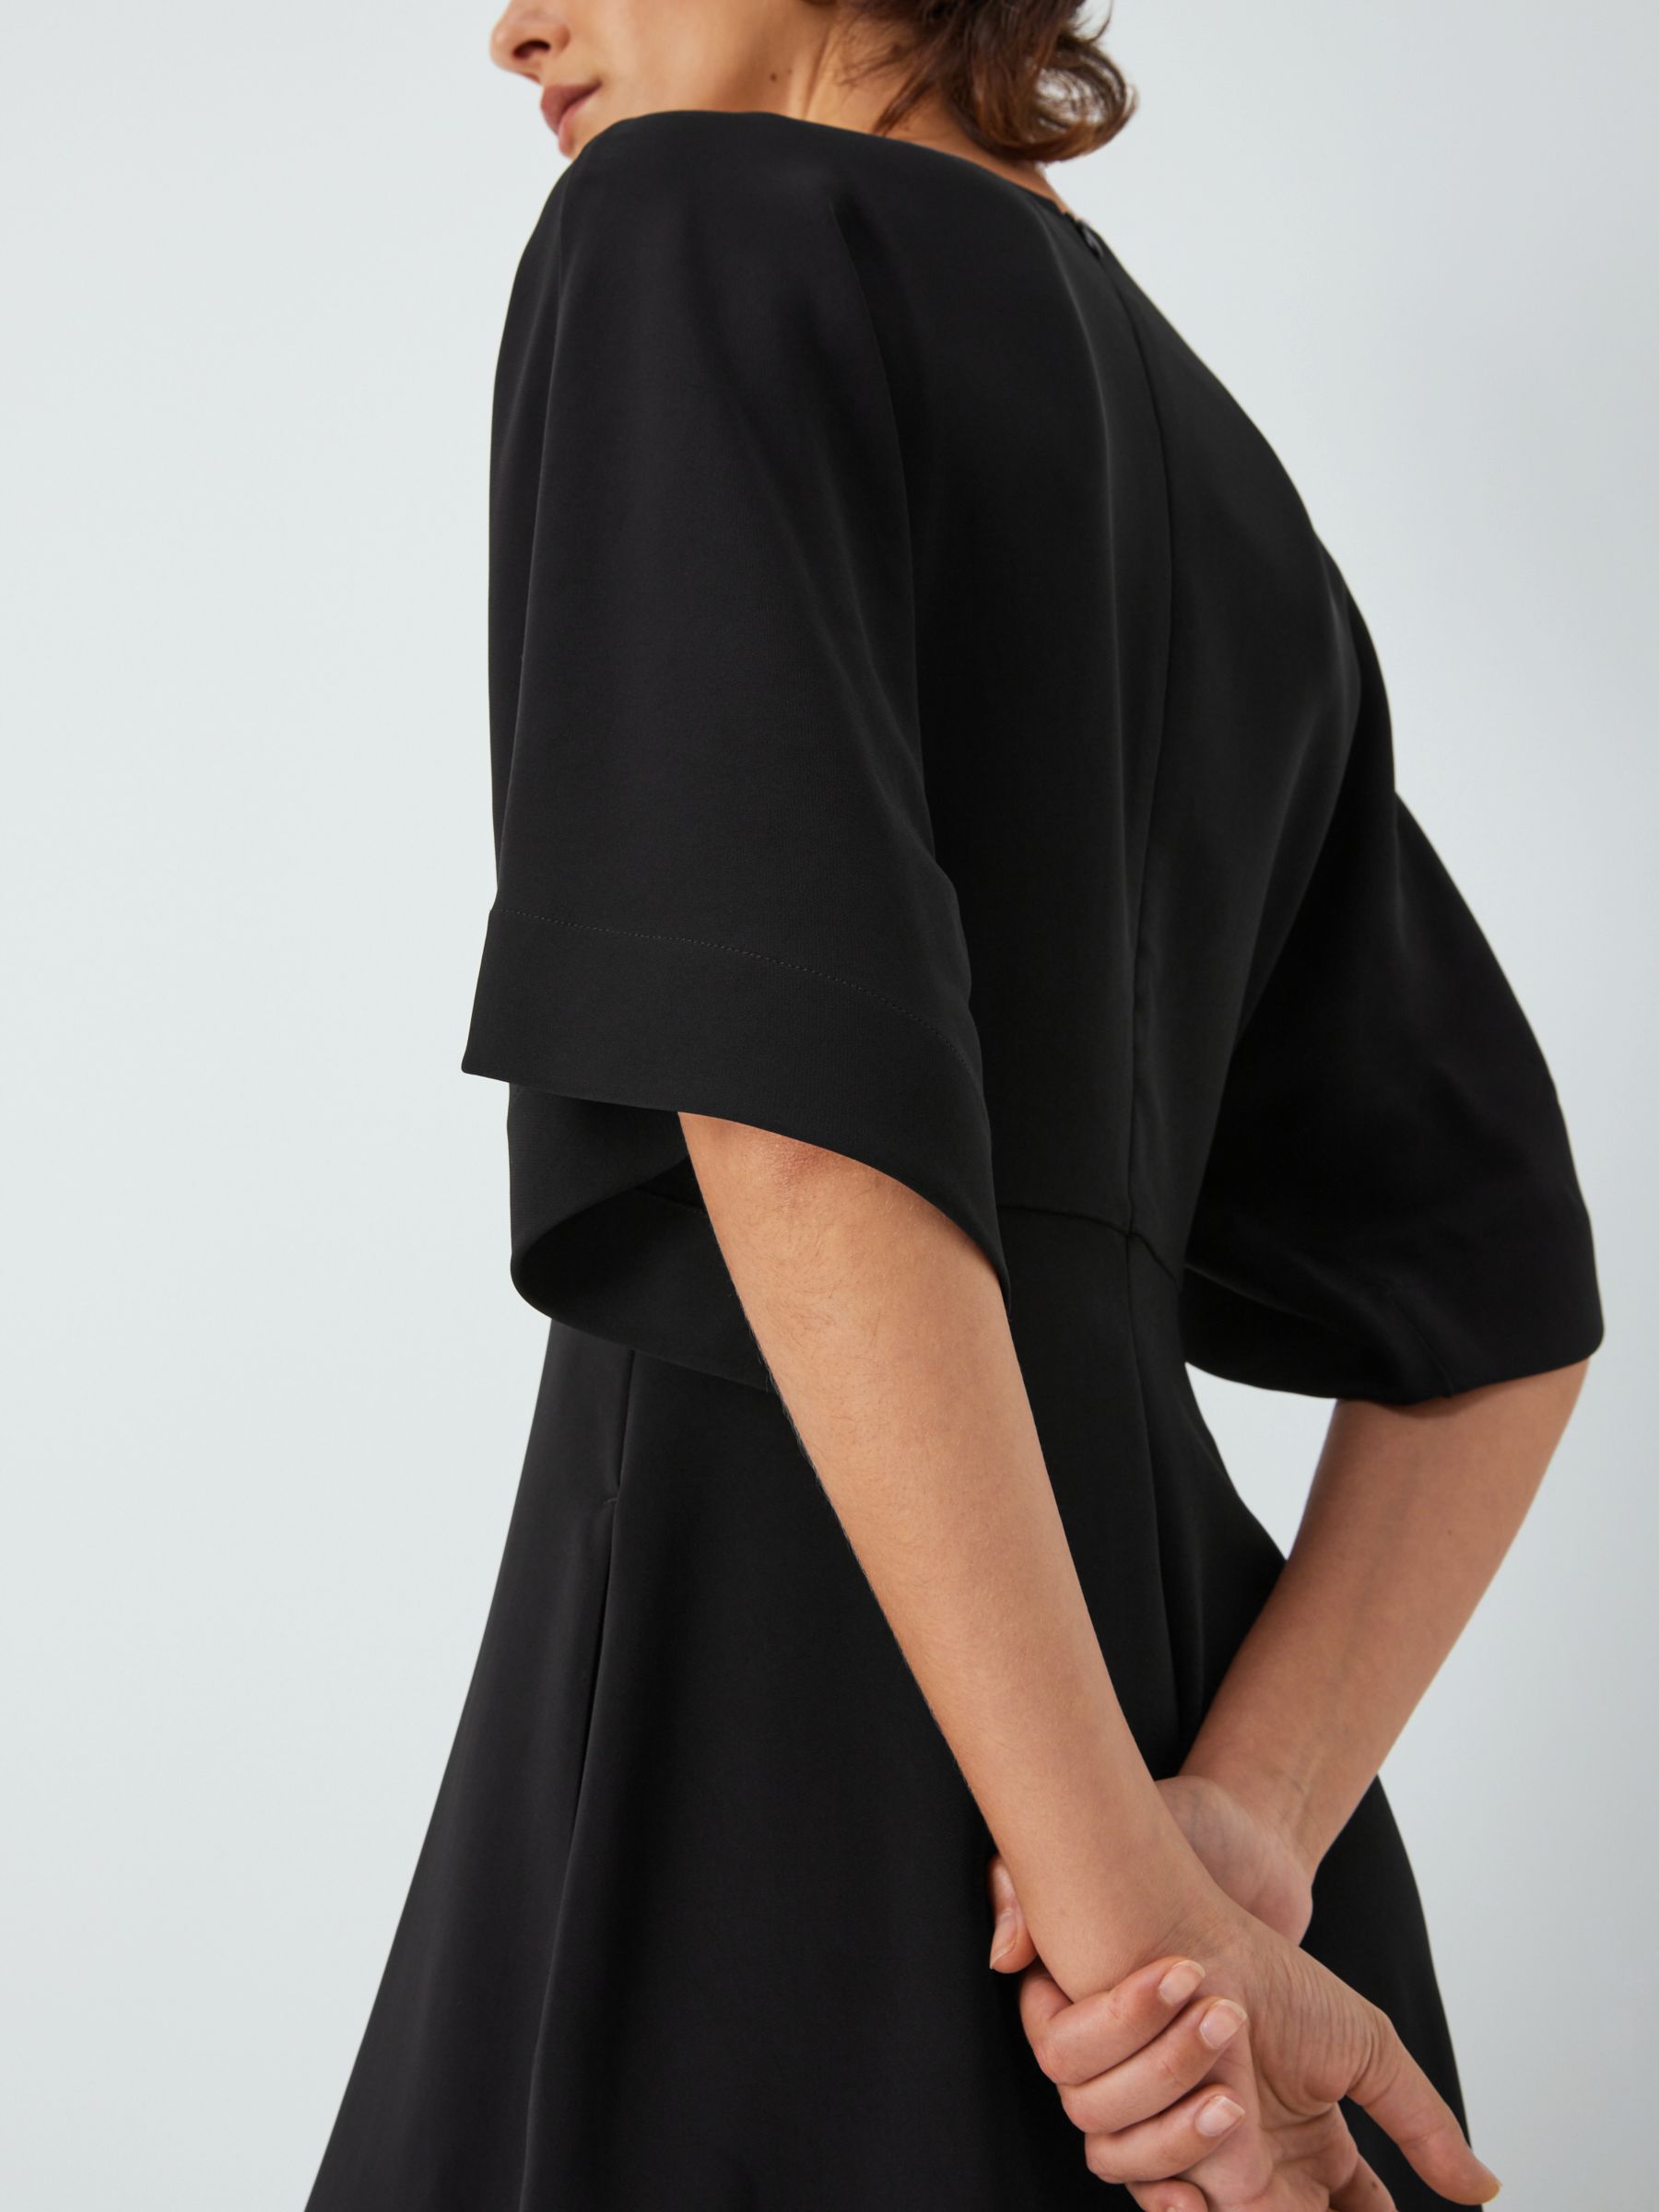 Buy John Lewis V-Neck Dress, Black Online at johnlewis.com